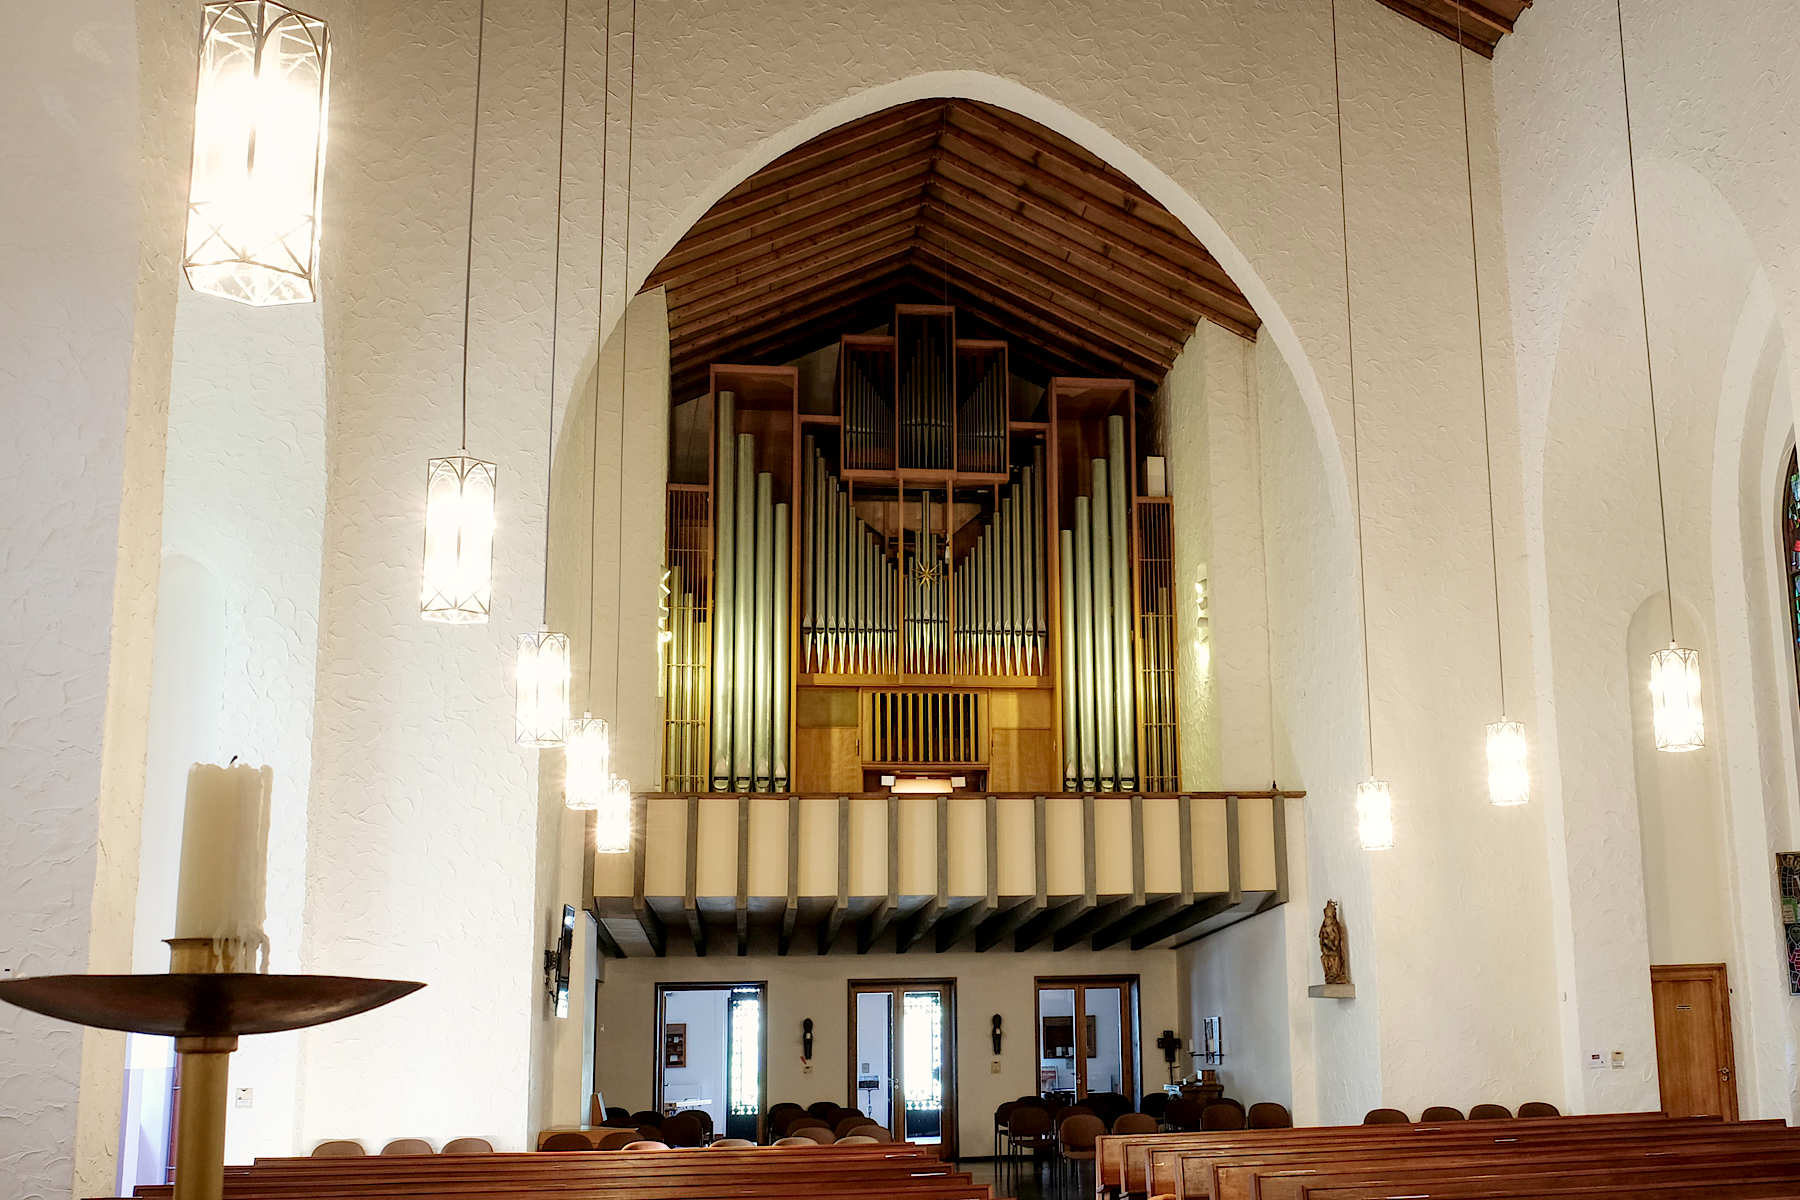 Orgel Berlin